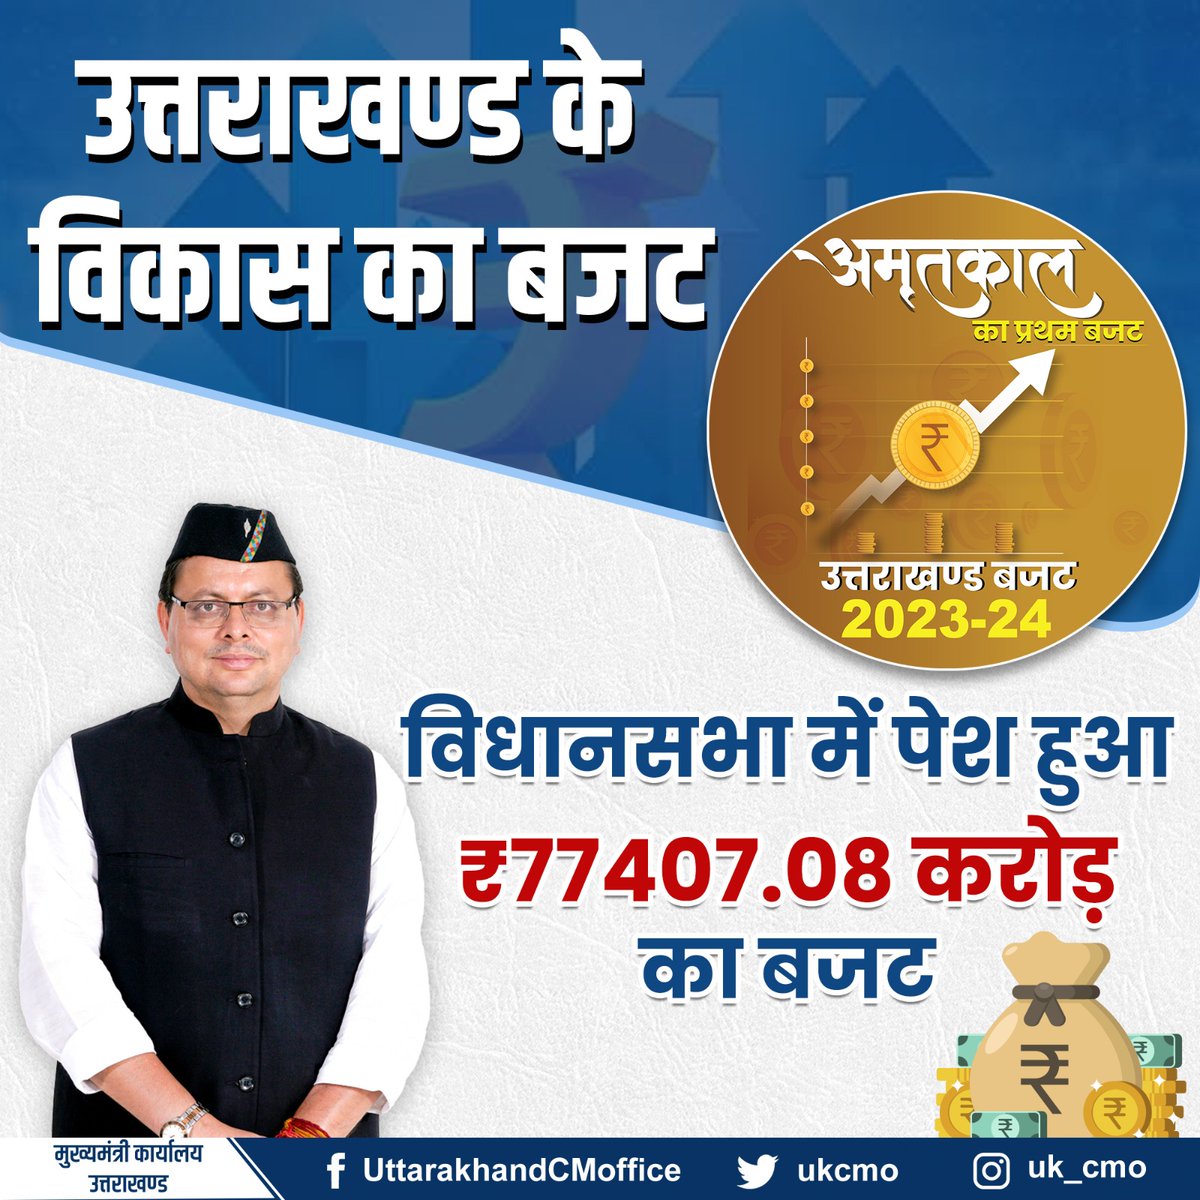 आज विधानसभा सत्र के दौरान ₹77407.08 करोड़ का बजट पेश किया गया। #Uttarakhandbudget2023